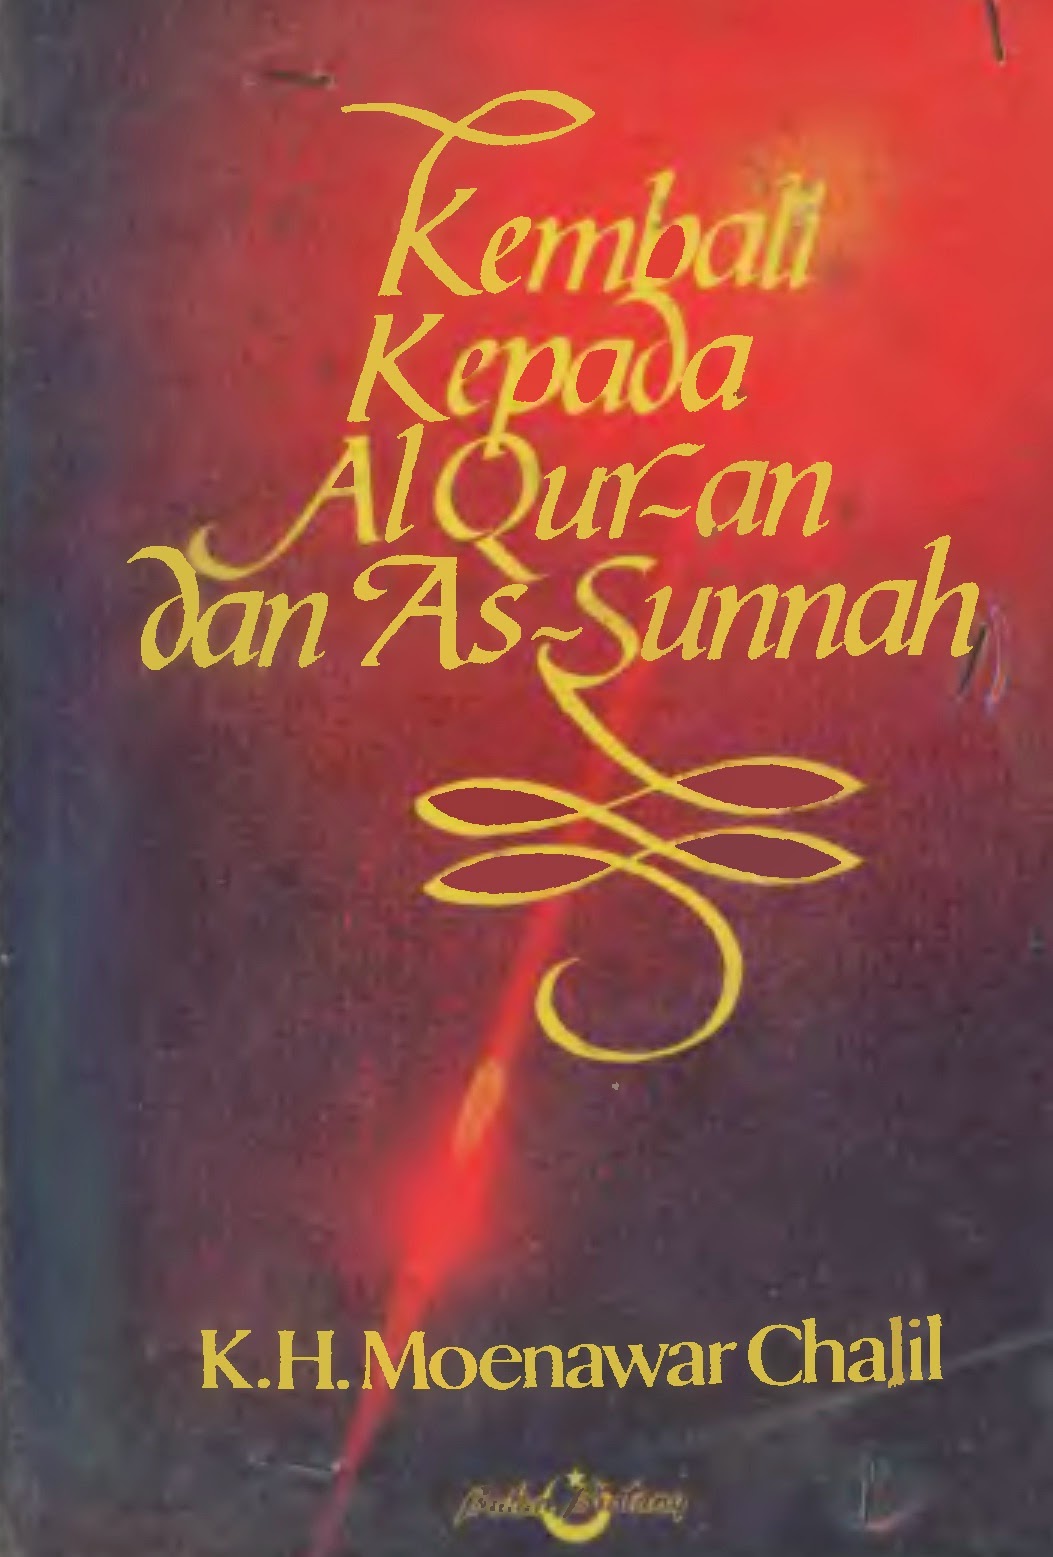 Kembali ke al-Quran dan as-Sunnah